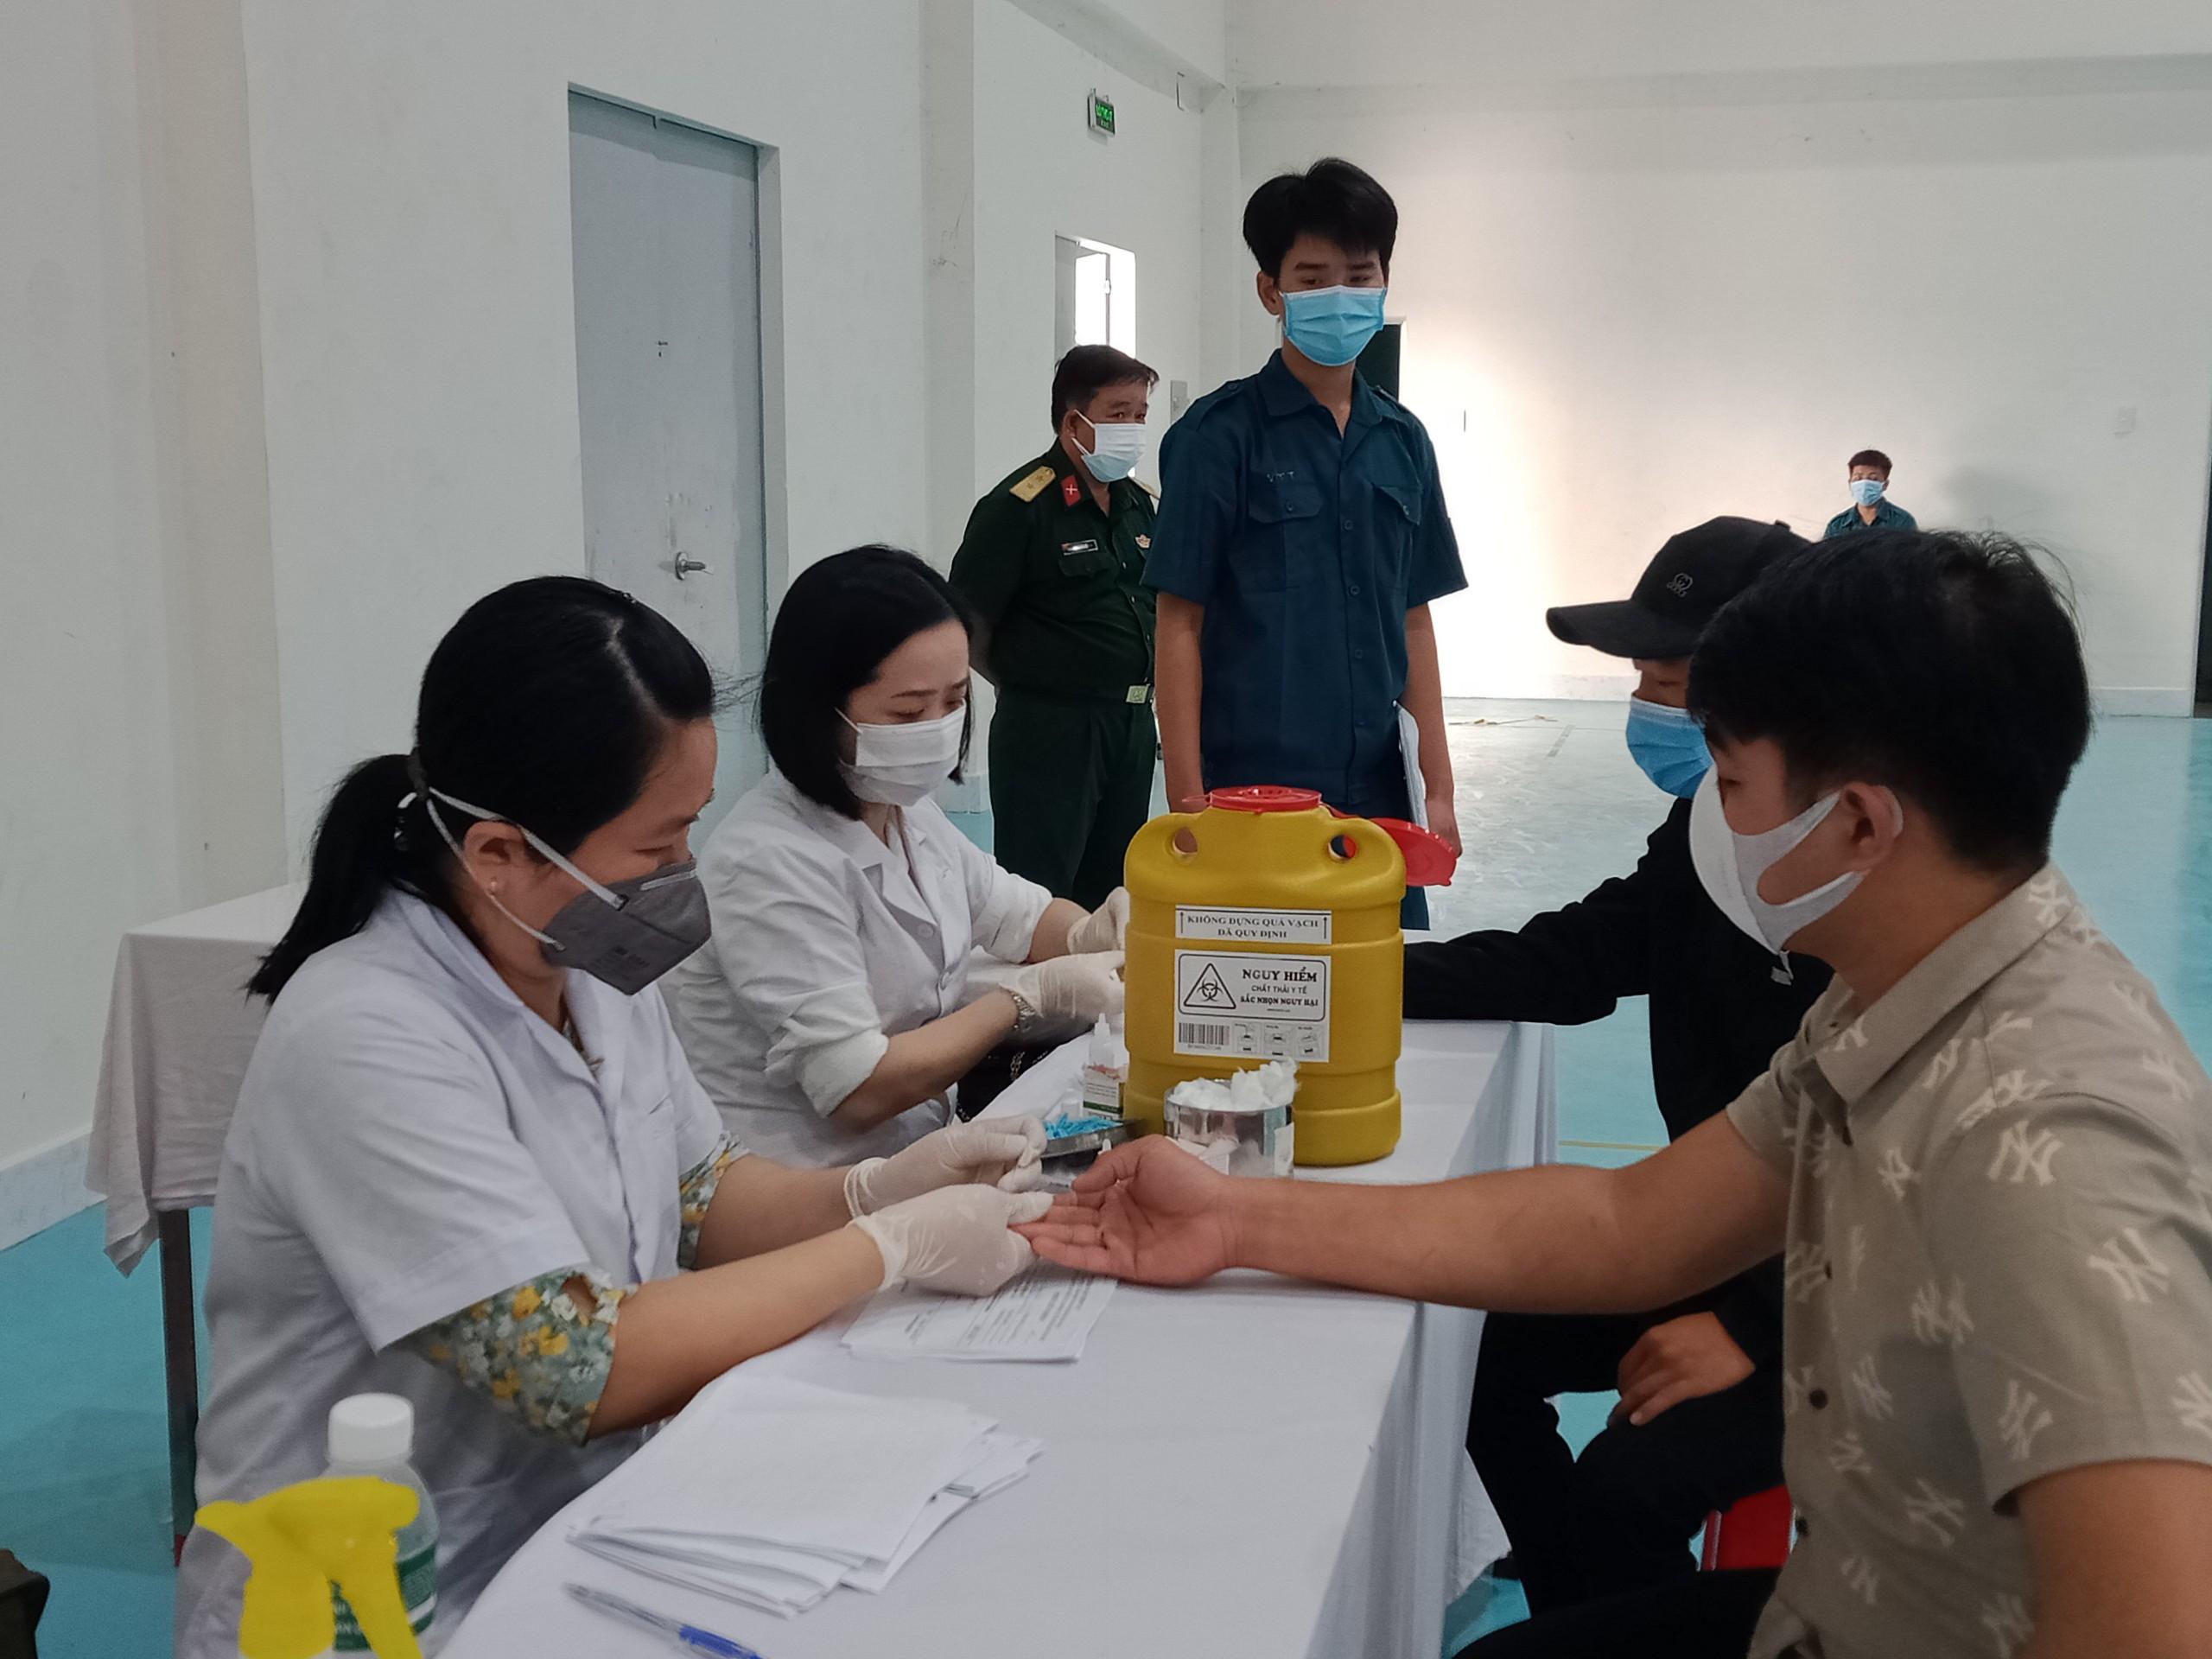 Hội đồng NVQS huyện Dương Minh Châu: Giám sát HIV, ma túy đối với gần 200 công dân trúng tuyển nghĩa vụ quân sự và tham gia công an nhân dân năm 2022